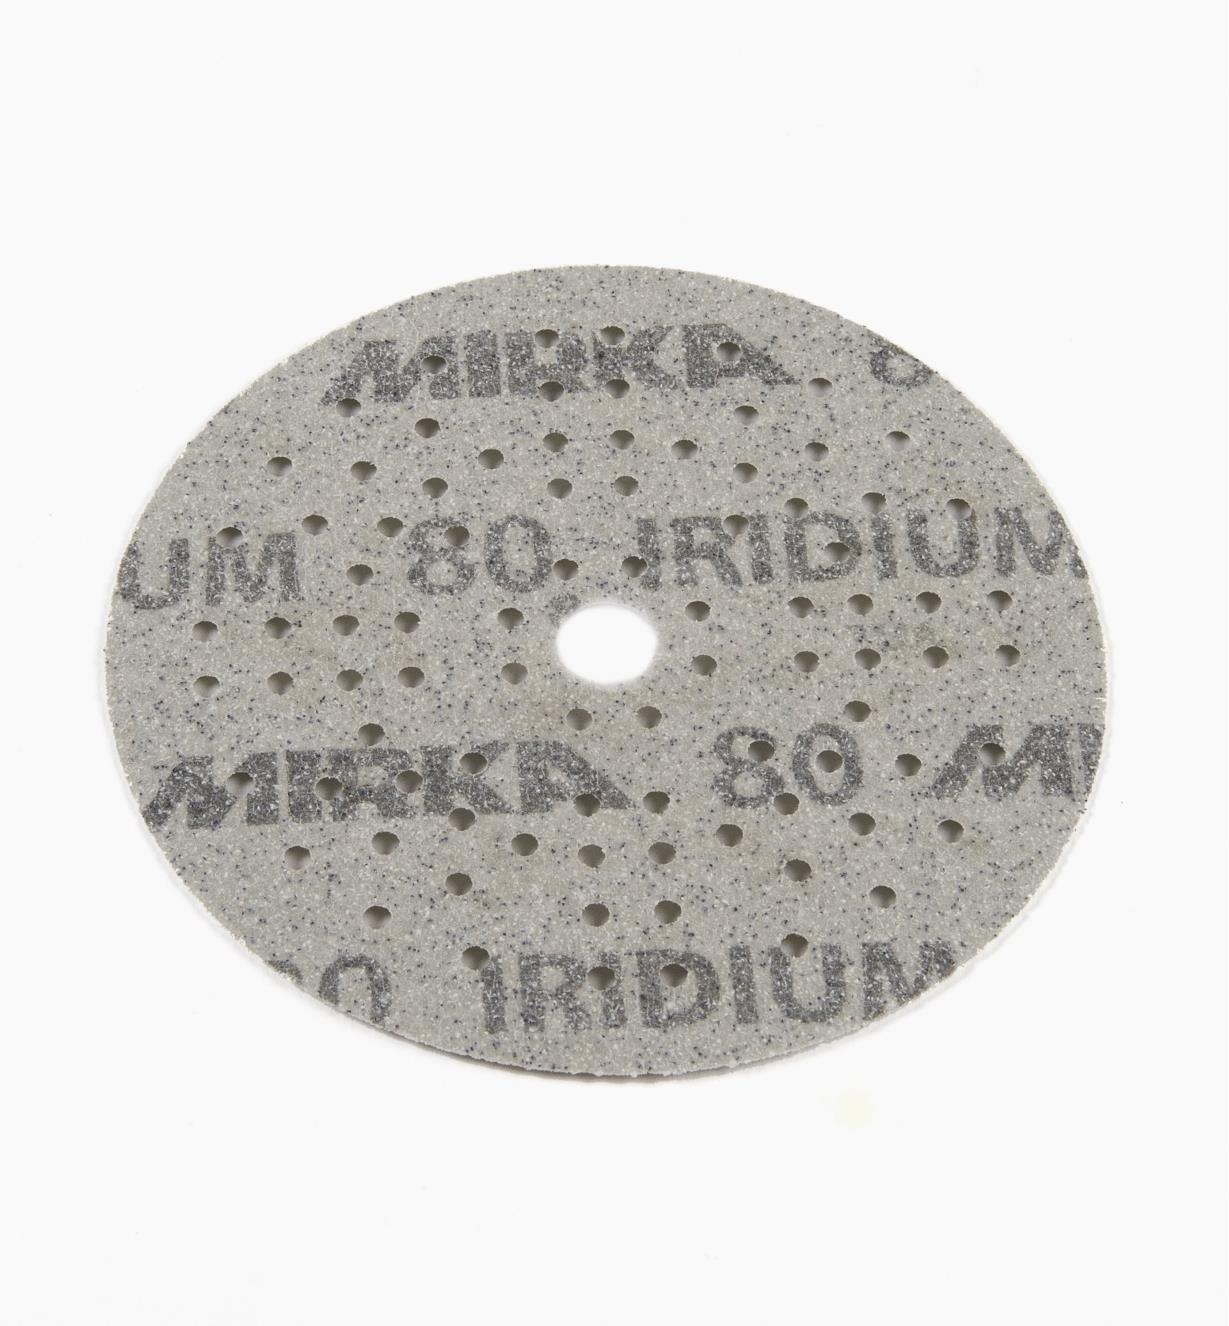 08K0923 - Disque abrasif autoagrippant Iridium, 5 po, 89 trous, grain 80, l'unité